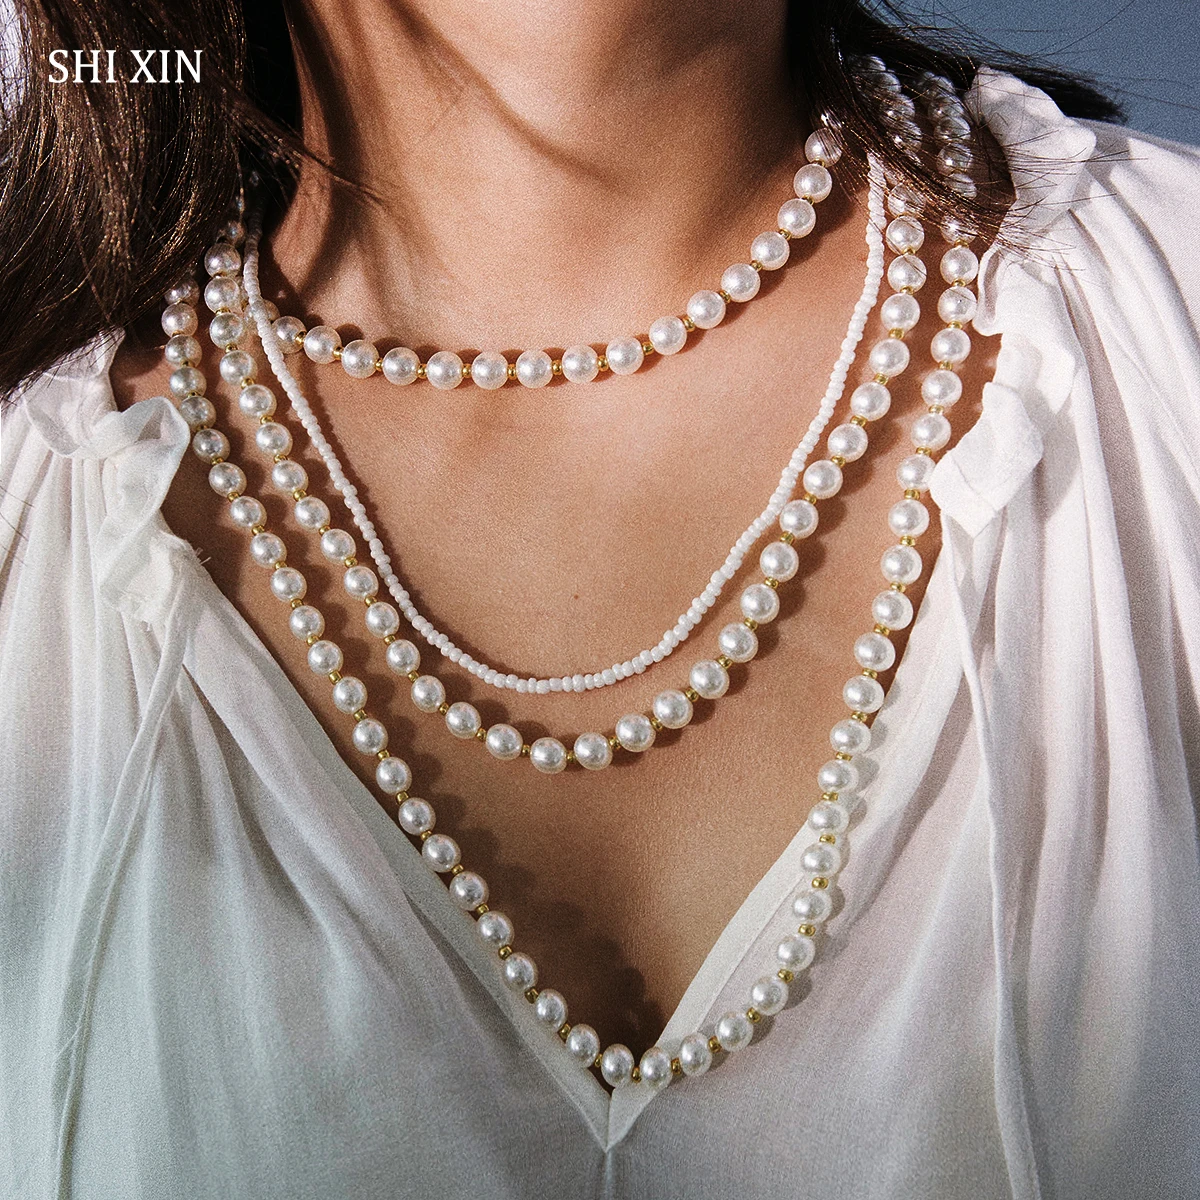 SHIXIN хип-хоп жемчужное ожерелье-чокер для женщин увеличенное большое многослойное ожерелье из бисера, персонализированные украшения на шею